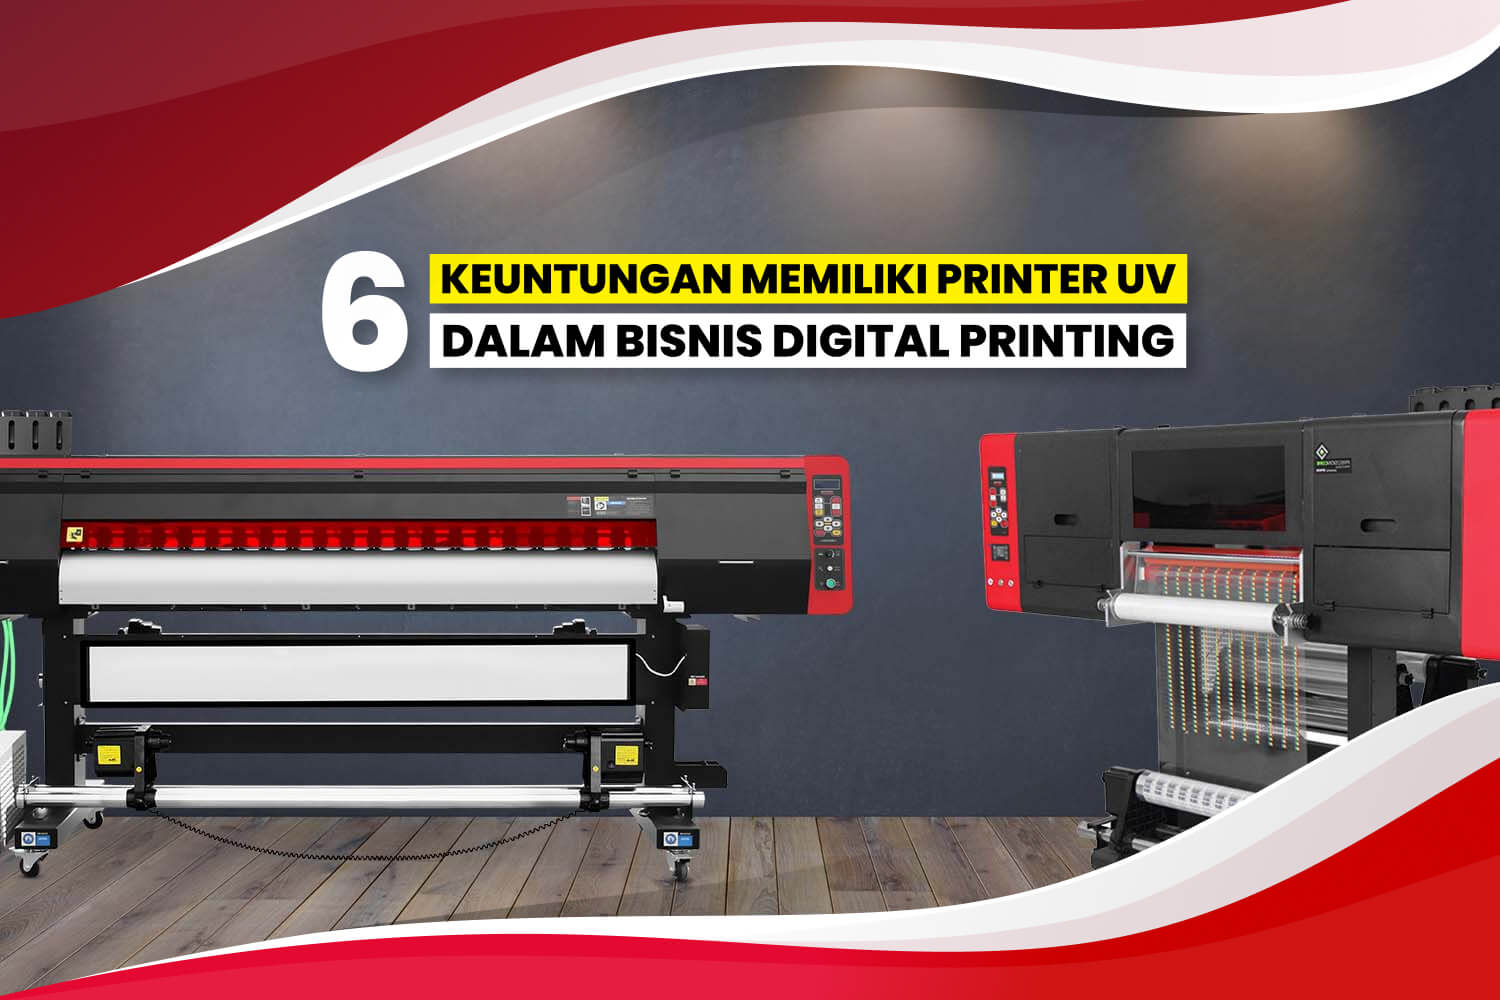 6 Keuntungan Memiliki Printer Uv Dalam Bisnis Digital Printing